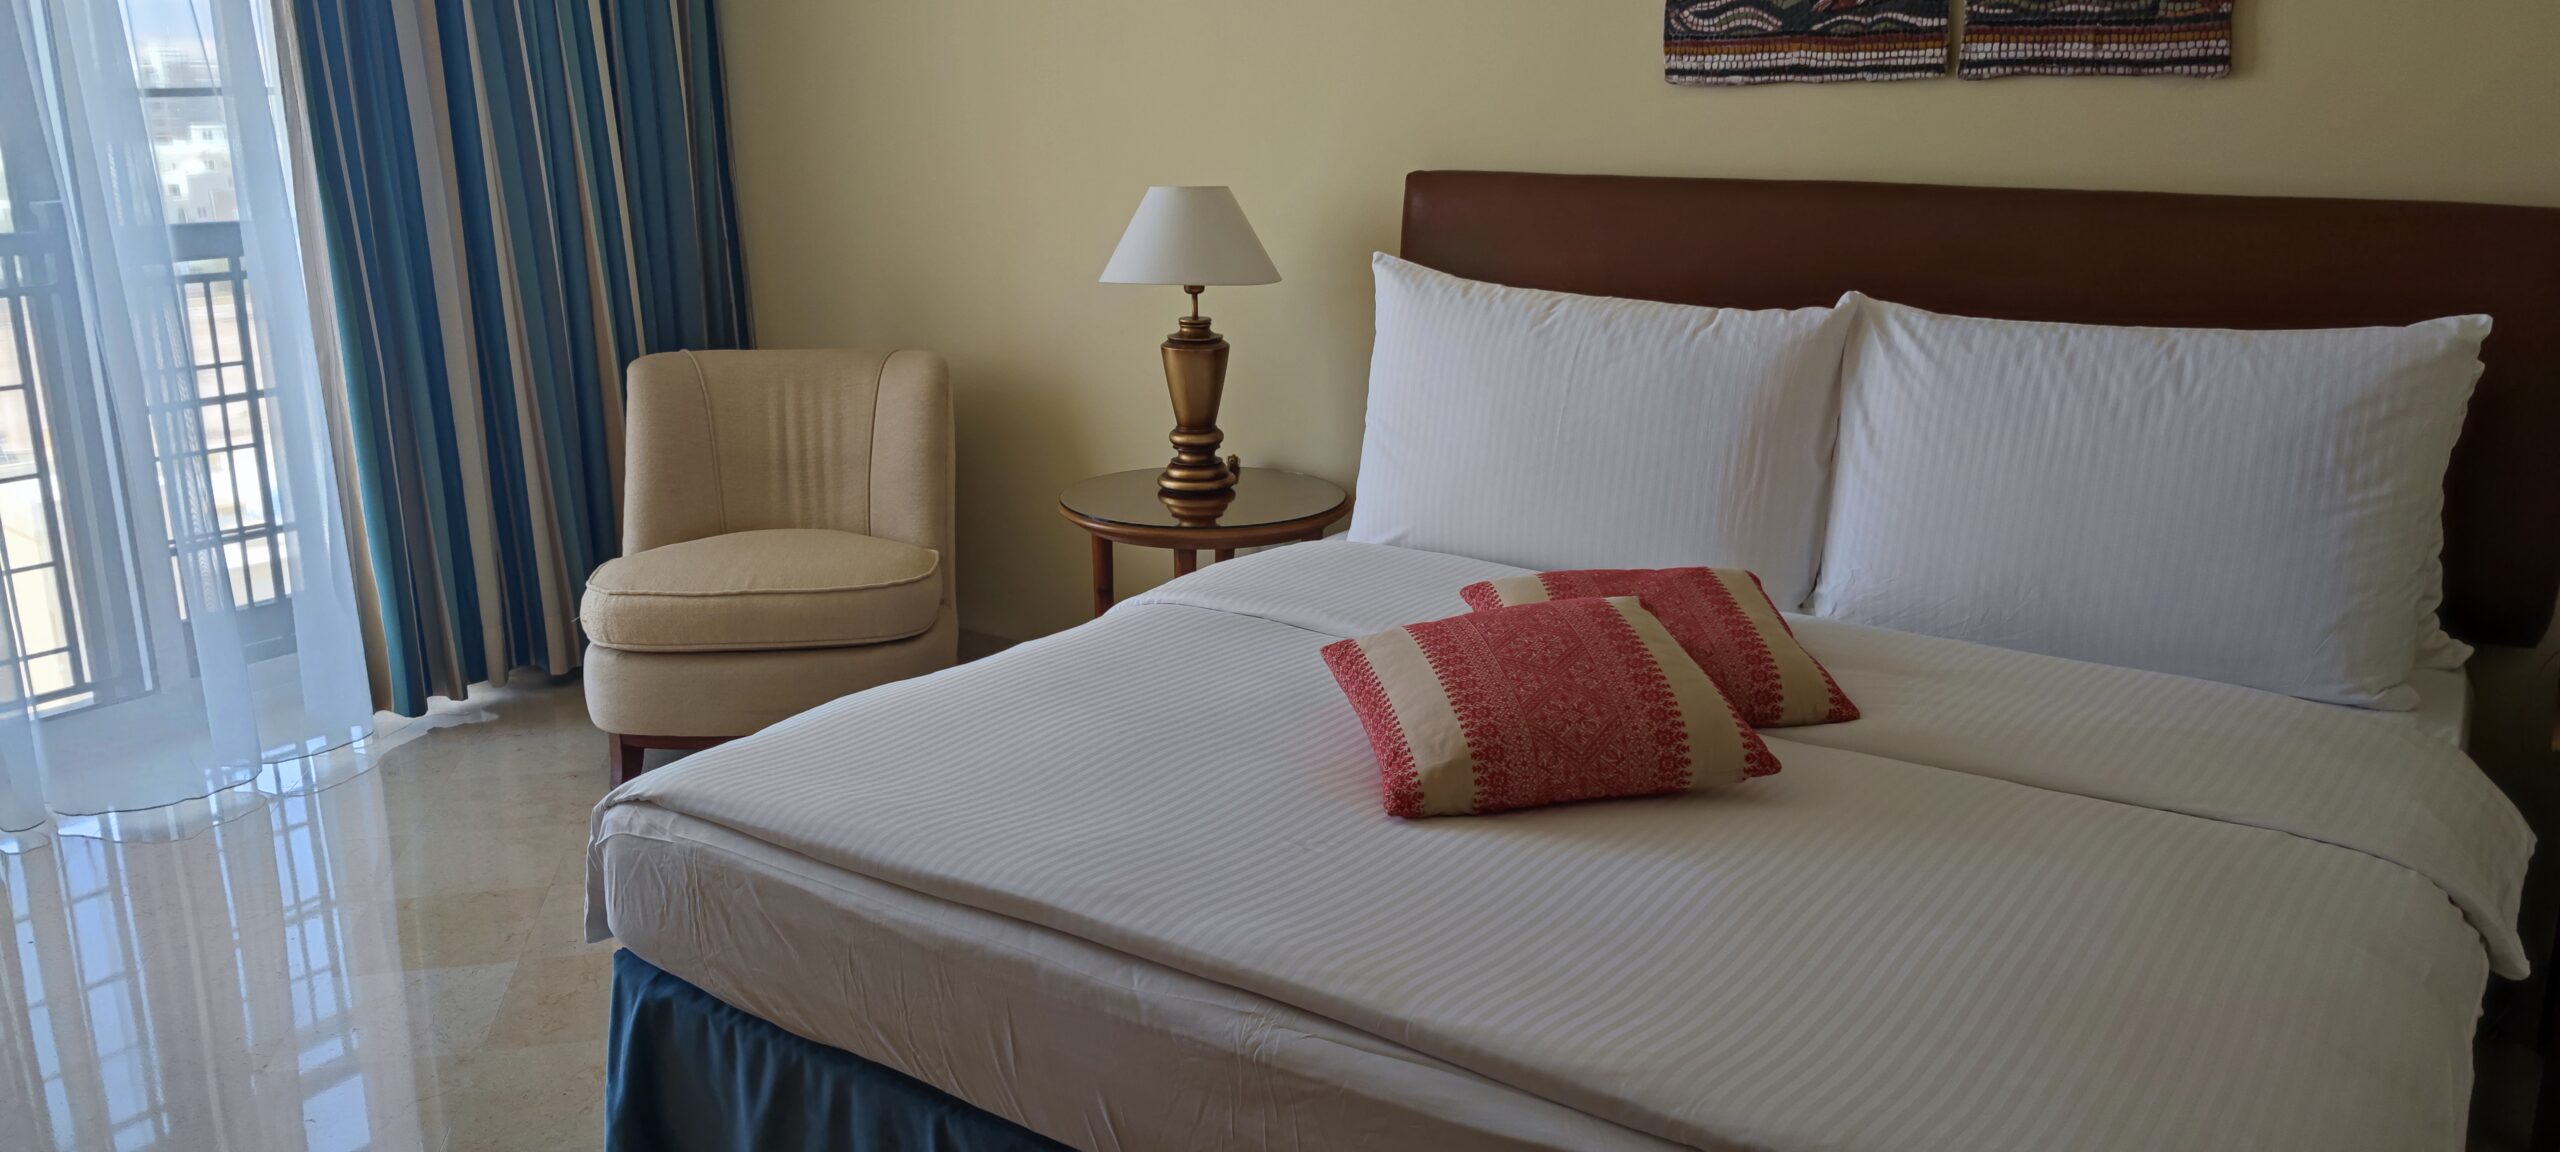 Препоръчани хотели в Акаба